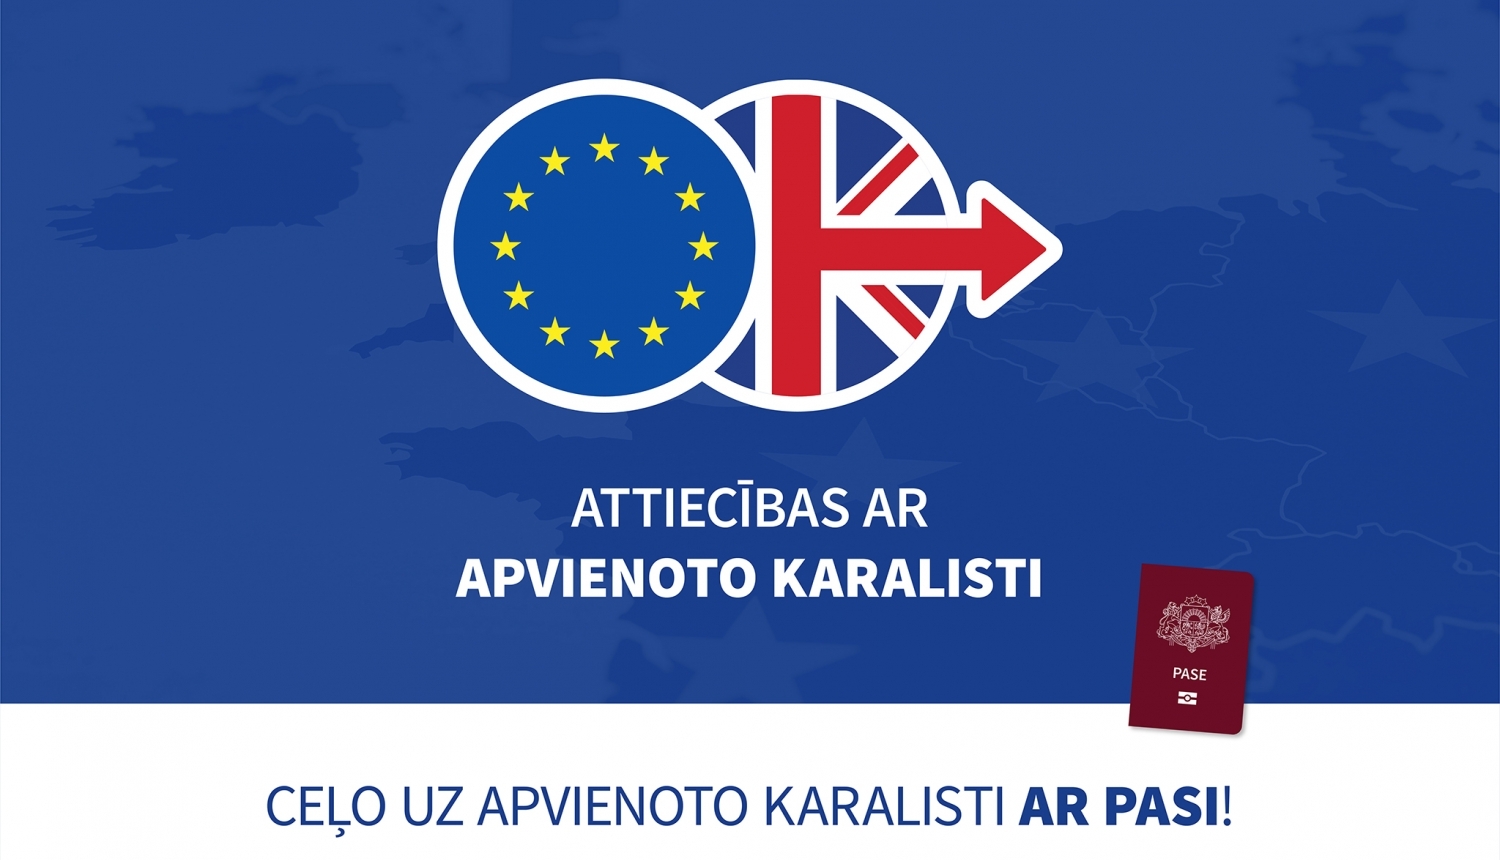 Vizuālais materiāls ar apvienotās karalistes un eiropas savienības logo uz zilā fona, un uzrakstu "Ceļo uz apvienoto karalisti ar pasi!"